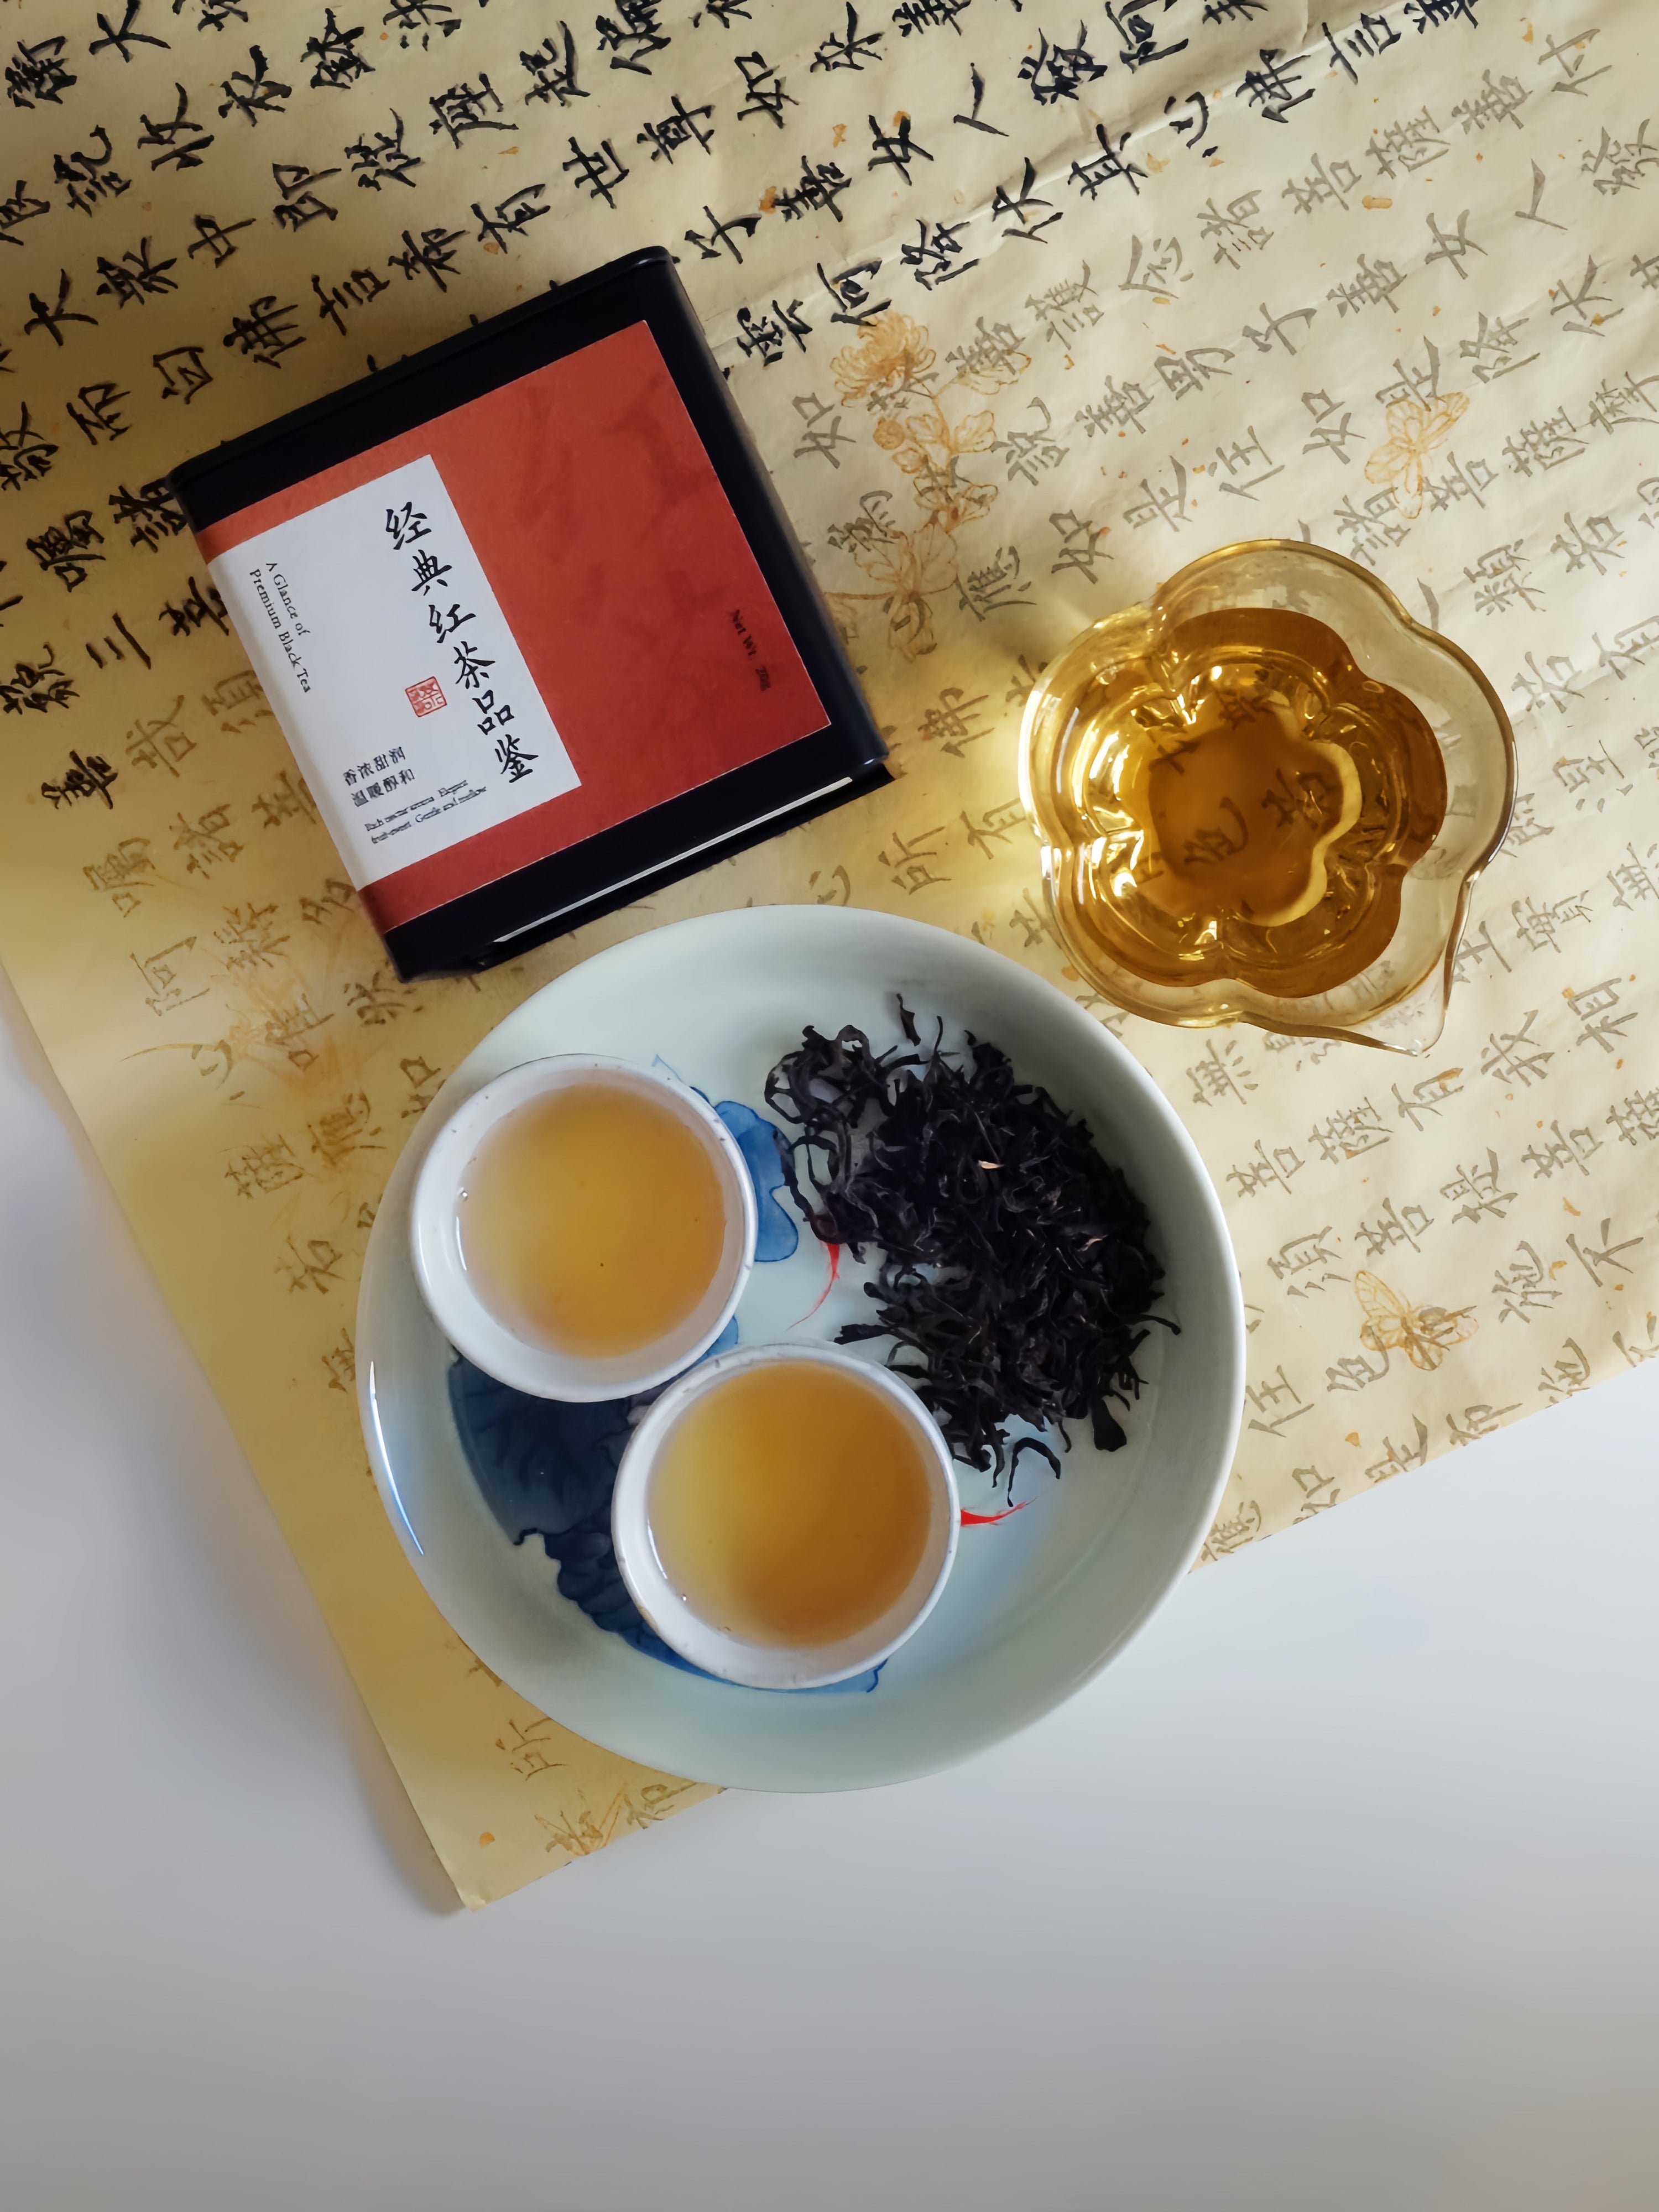 Black Tea Tasting Kit 红茶品鉴装